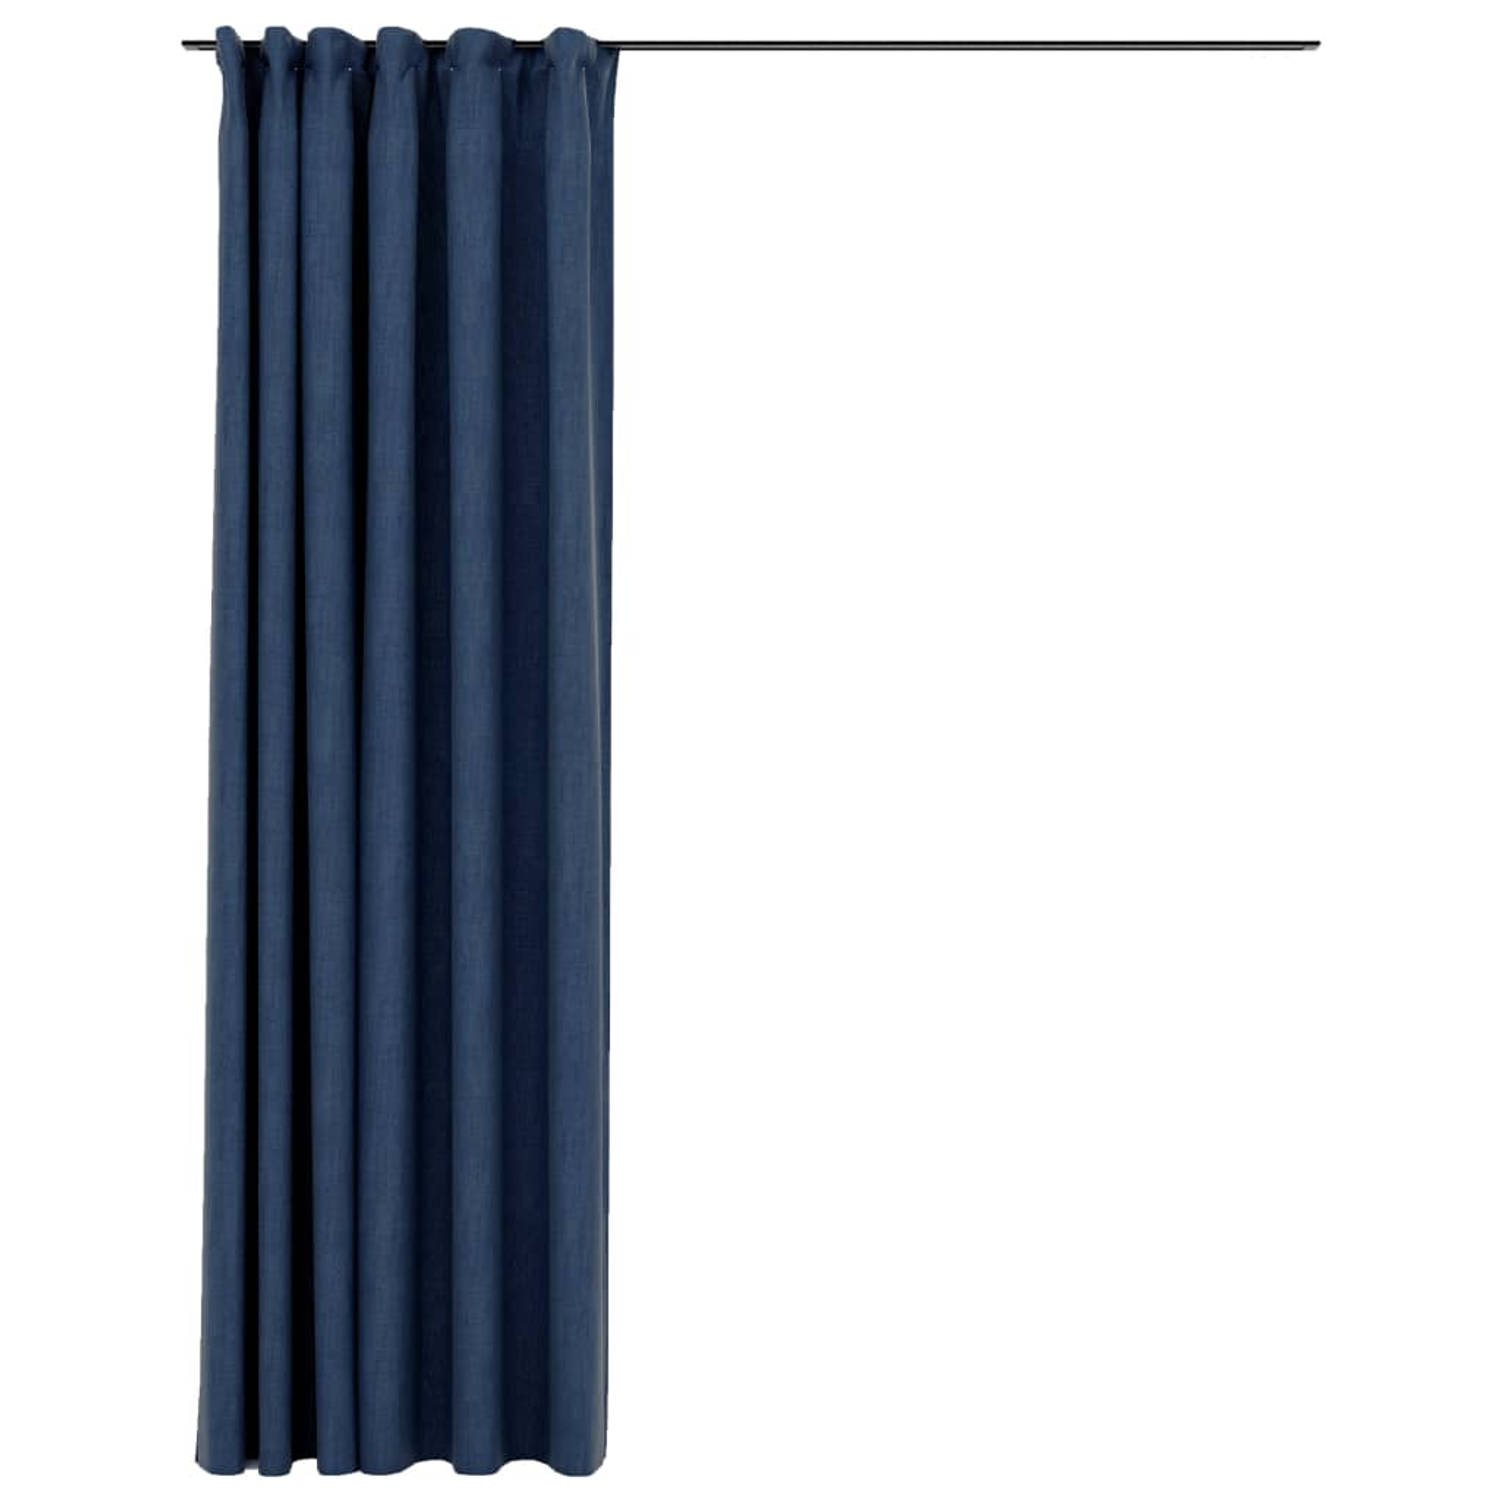 The Living Store Gordijn linnen-look verduisterend met haken 290x245 cm blauw - Gordijn